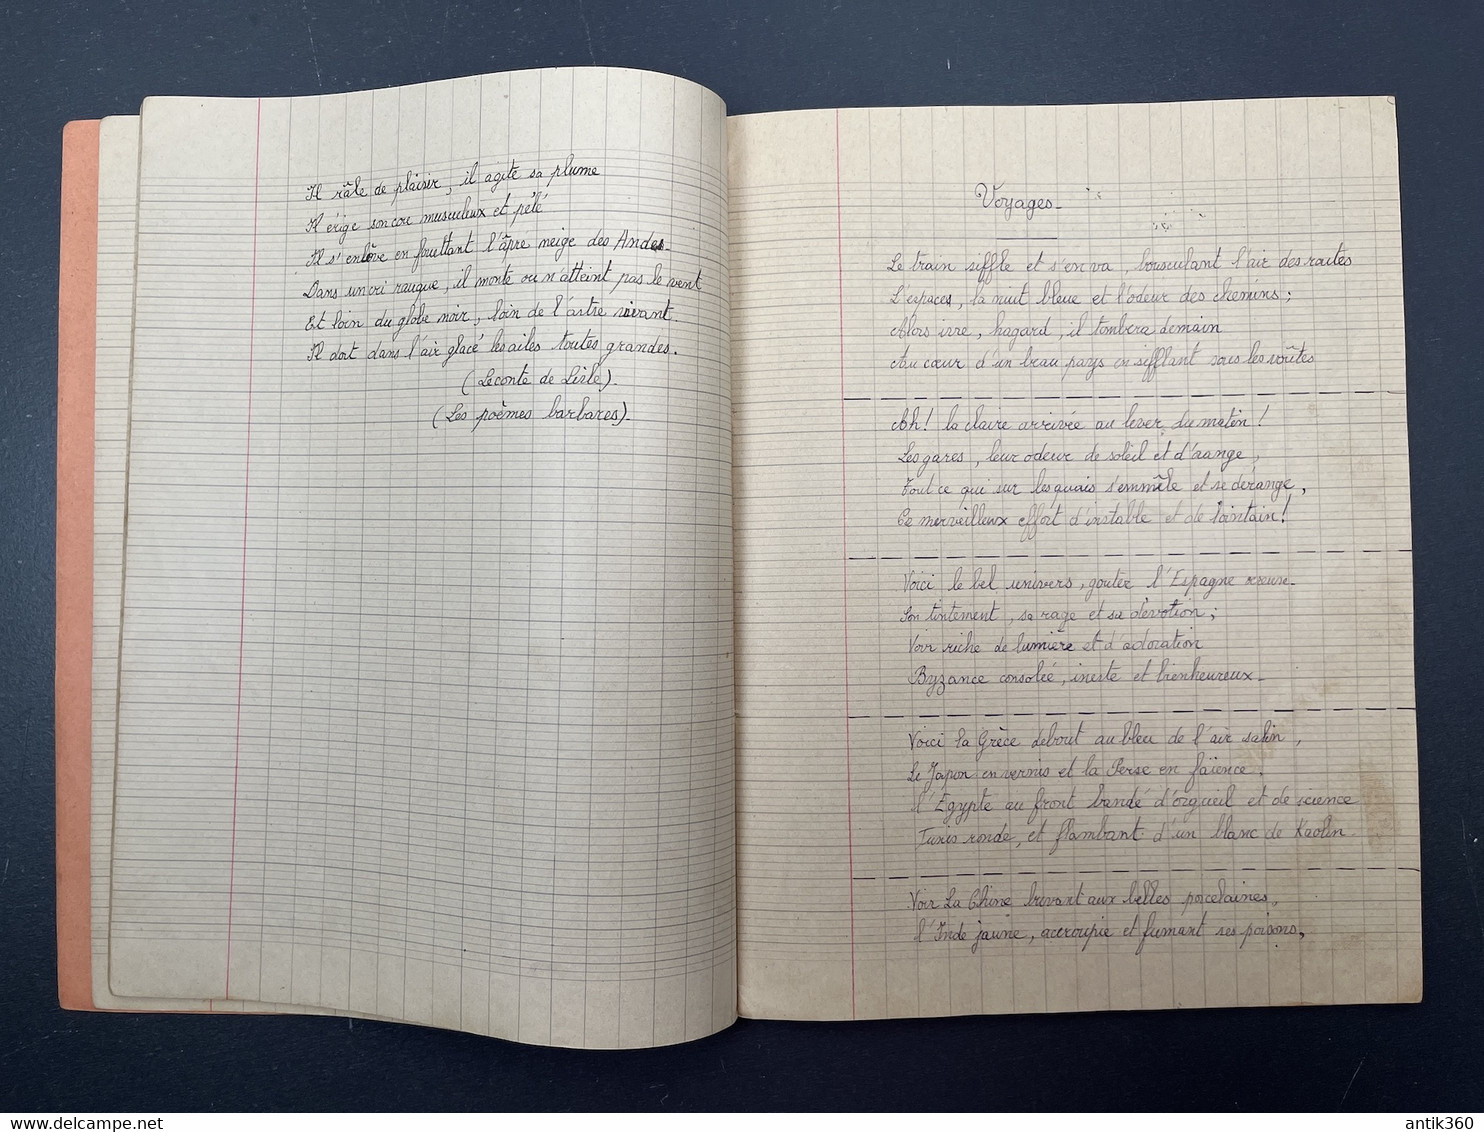 BOURBON-LANCY Cahier De Récitations Scolaire Ecole Publique Laïque Circa 1945 - Diplome Und Schulzeugnisse